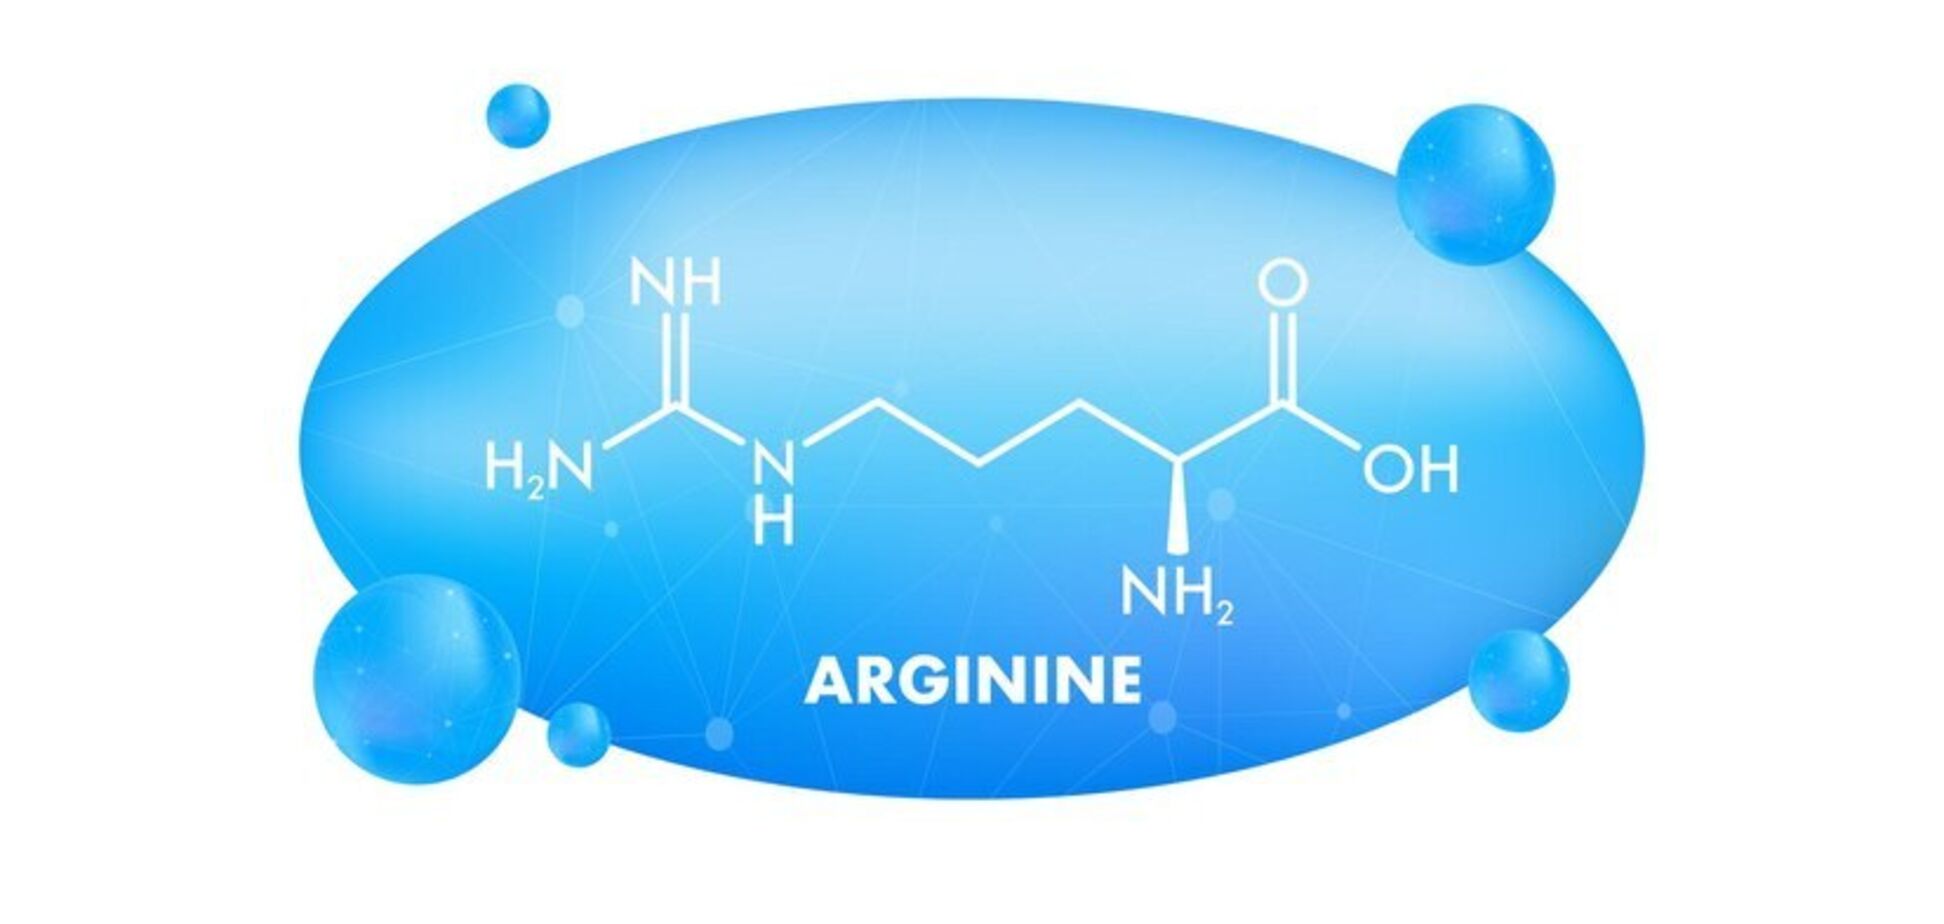 Лечебные свойства L-аргинина  сильно преувеличены 